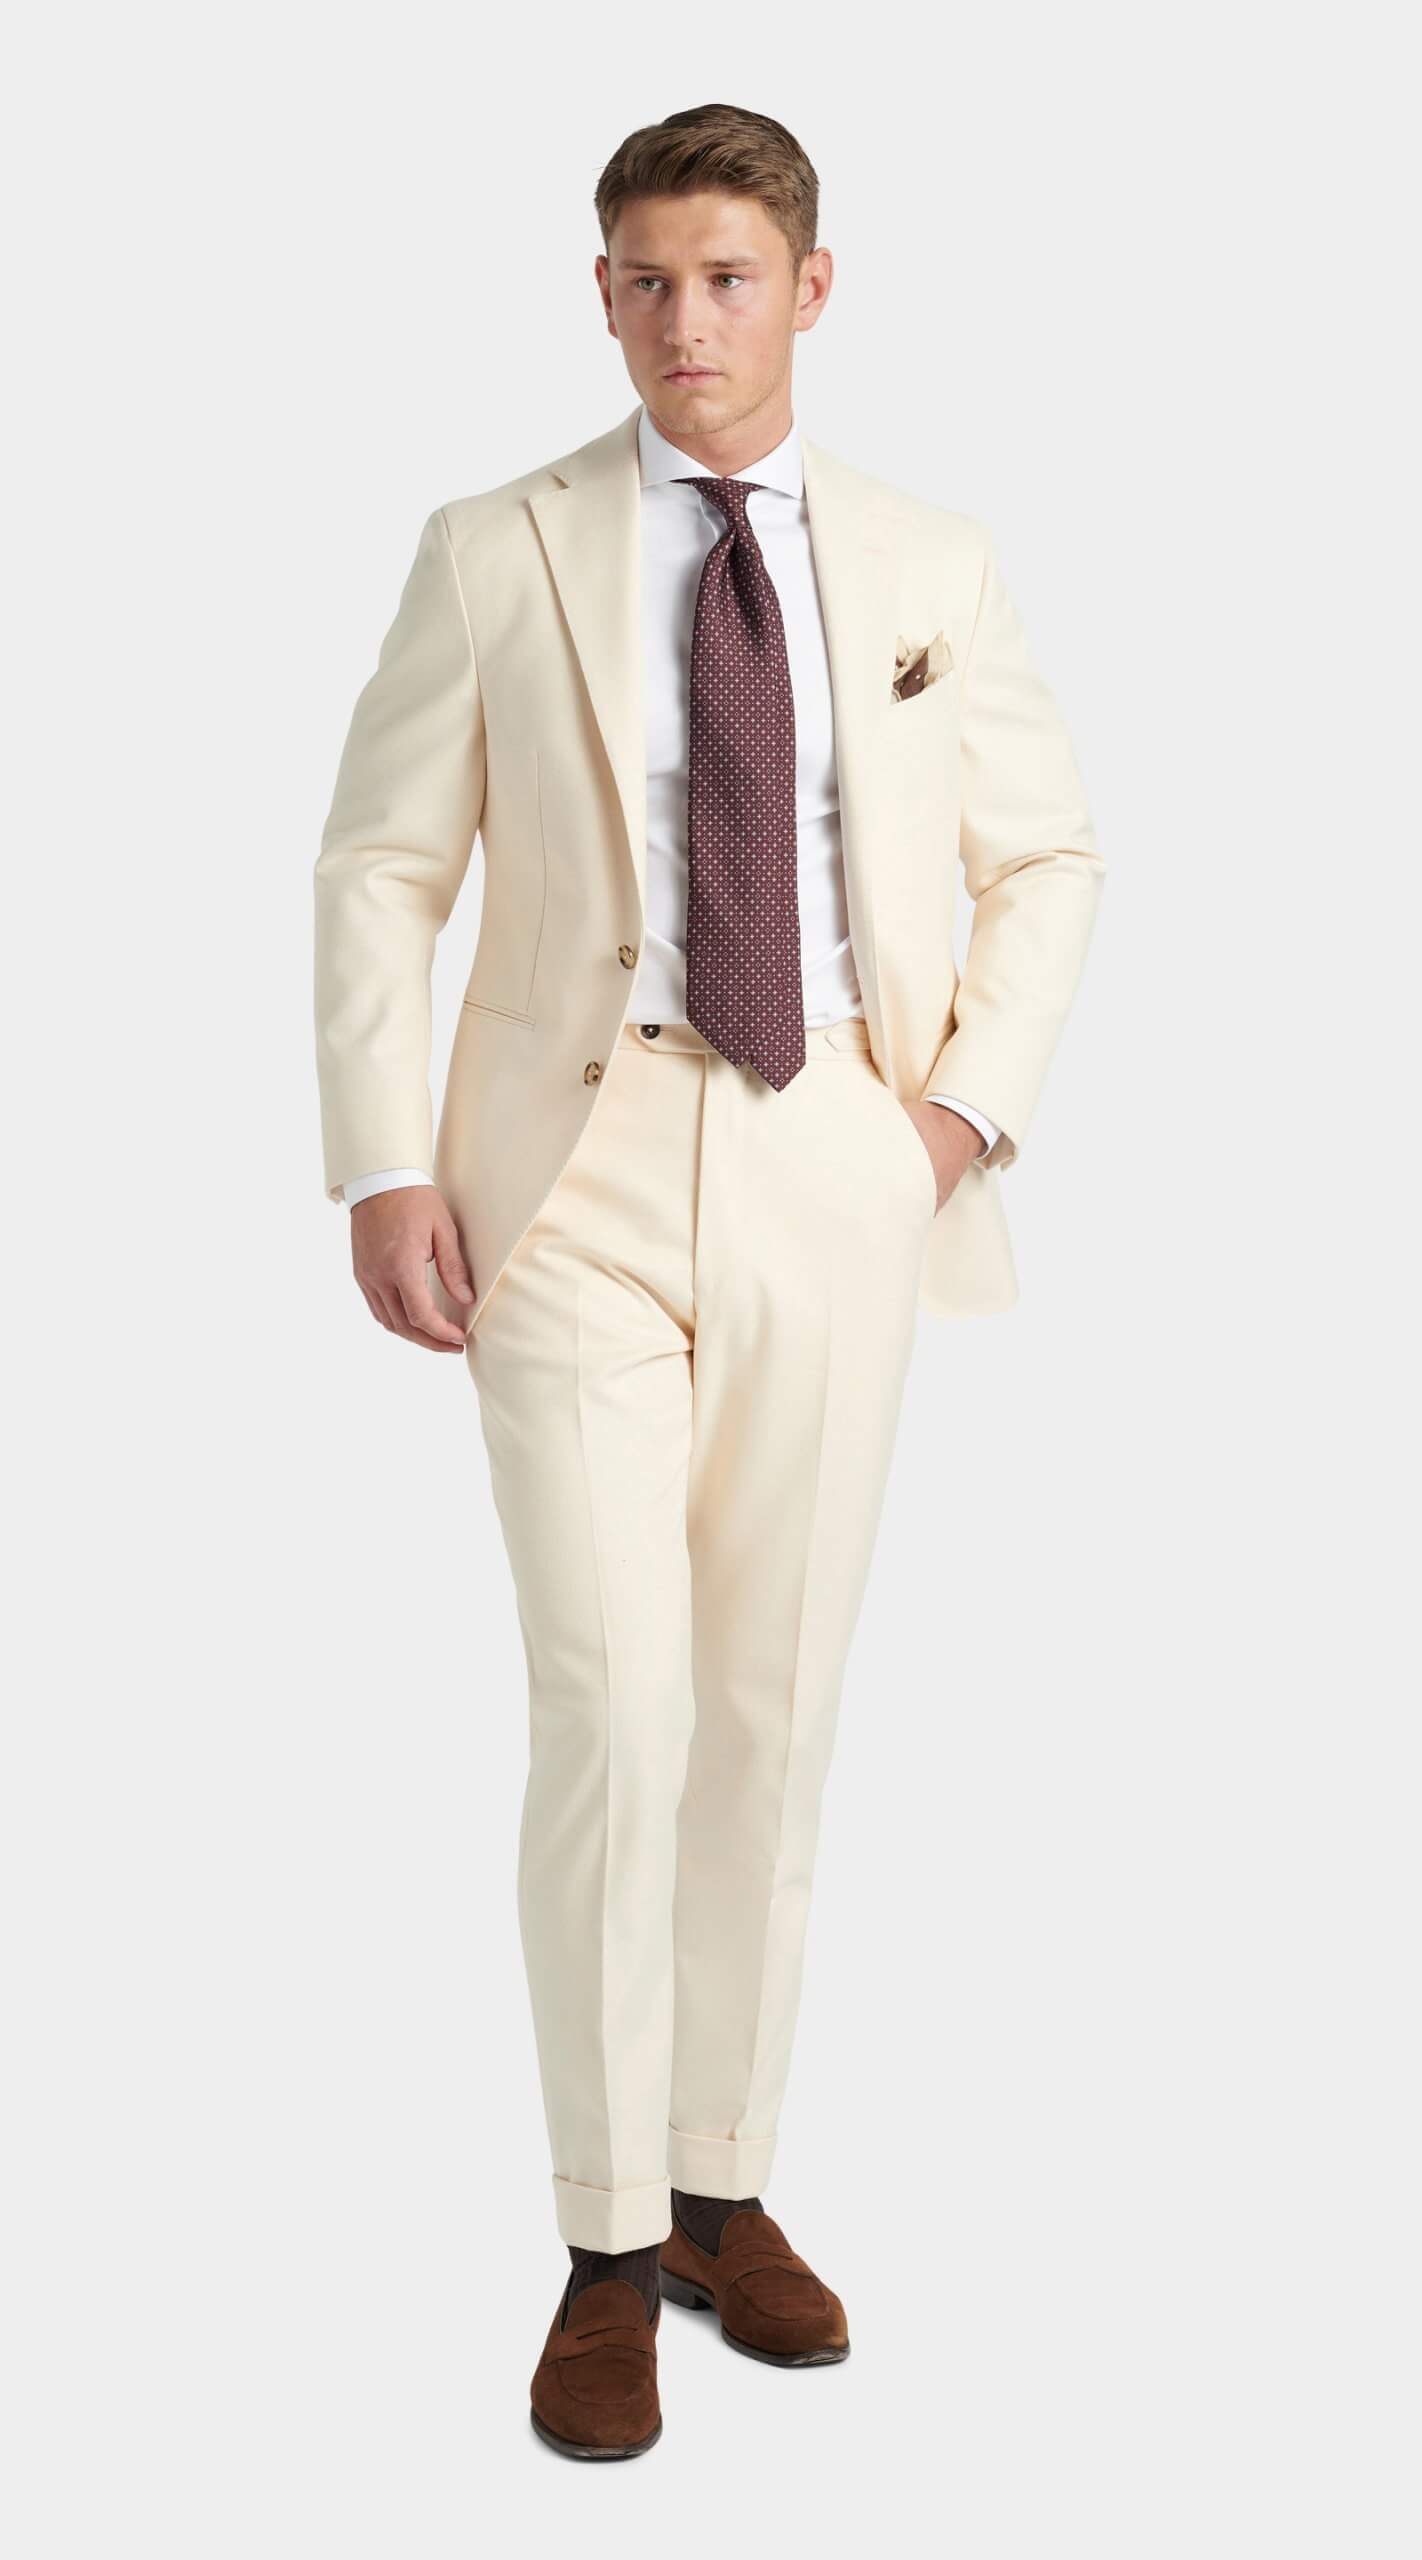 Custom made cream herringbone wedding suit